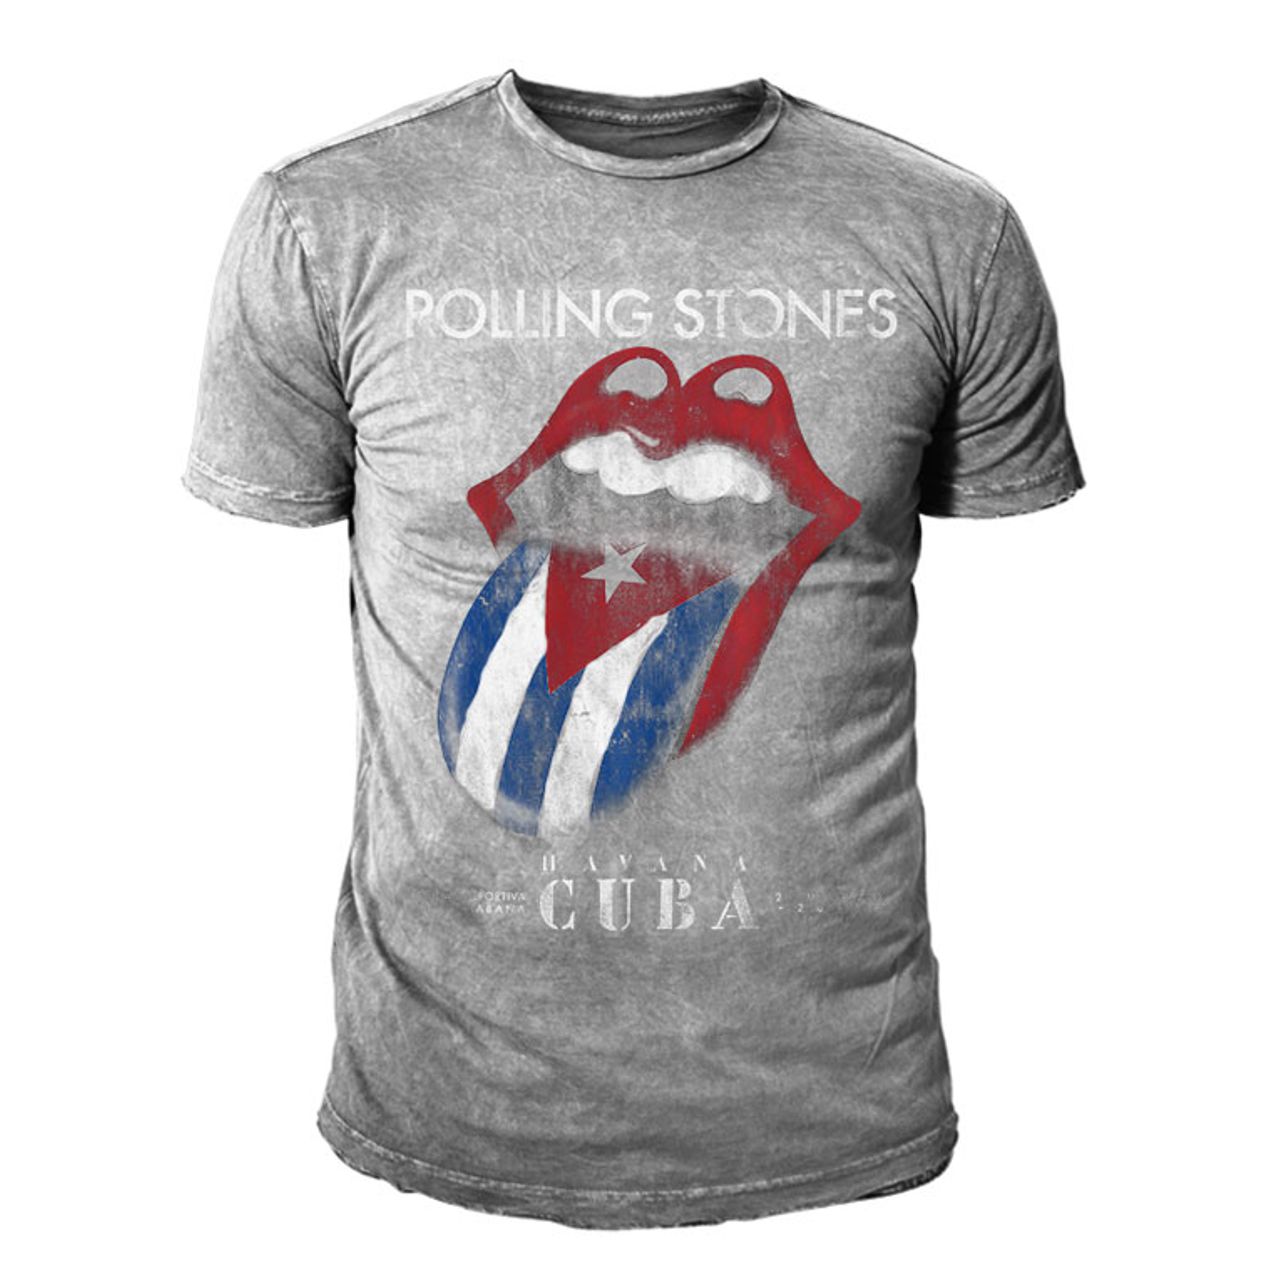 Rolling Stones Cuba Tongue Logo T Shirt Herren Grau • 64